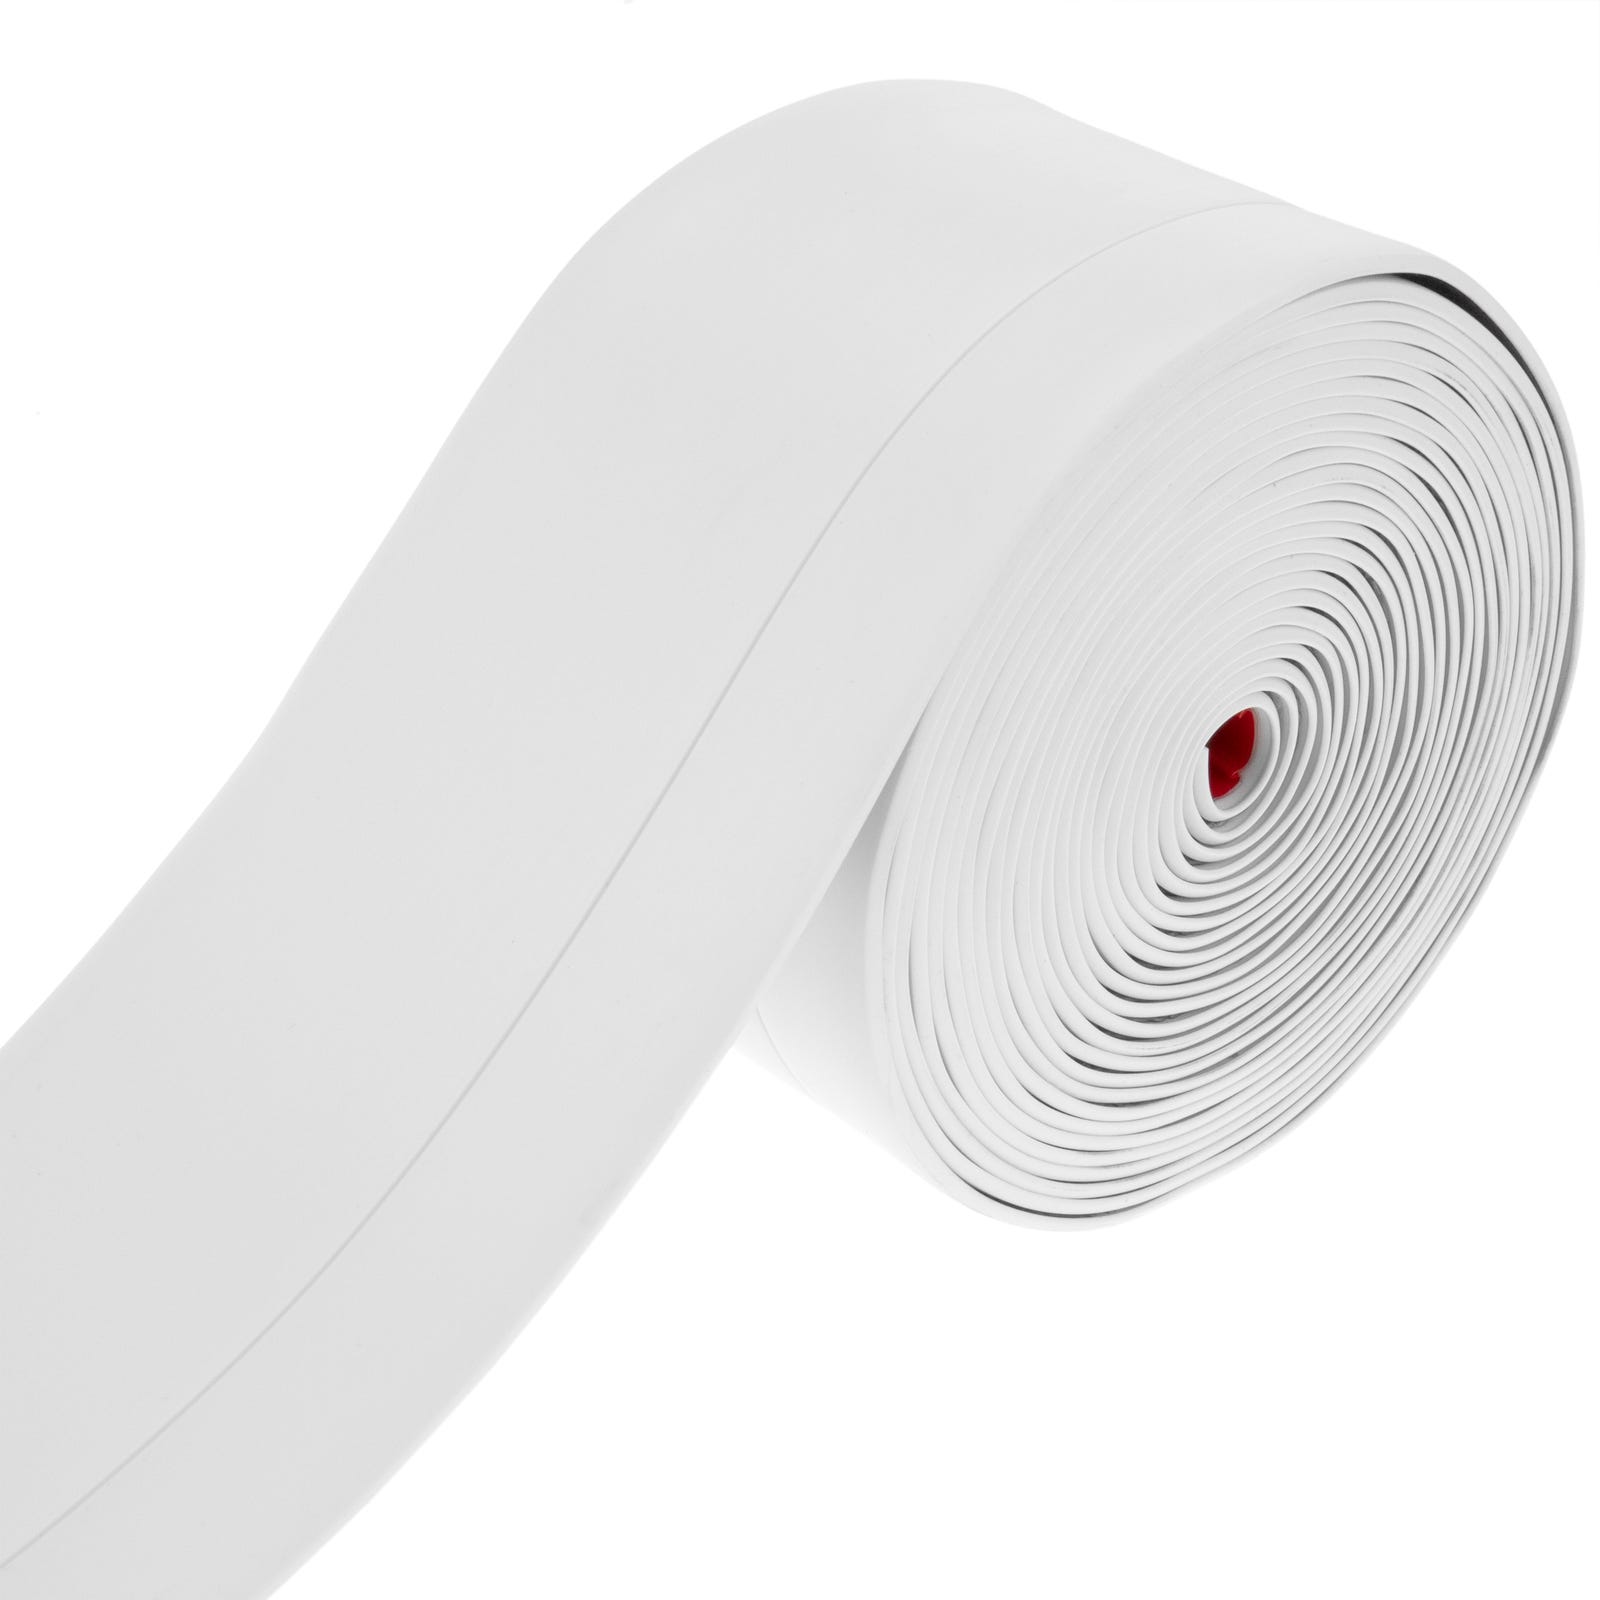 Plinthe flexible autocollante 70 x 20 mm. Longueur 5 m blanc